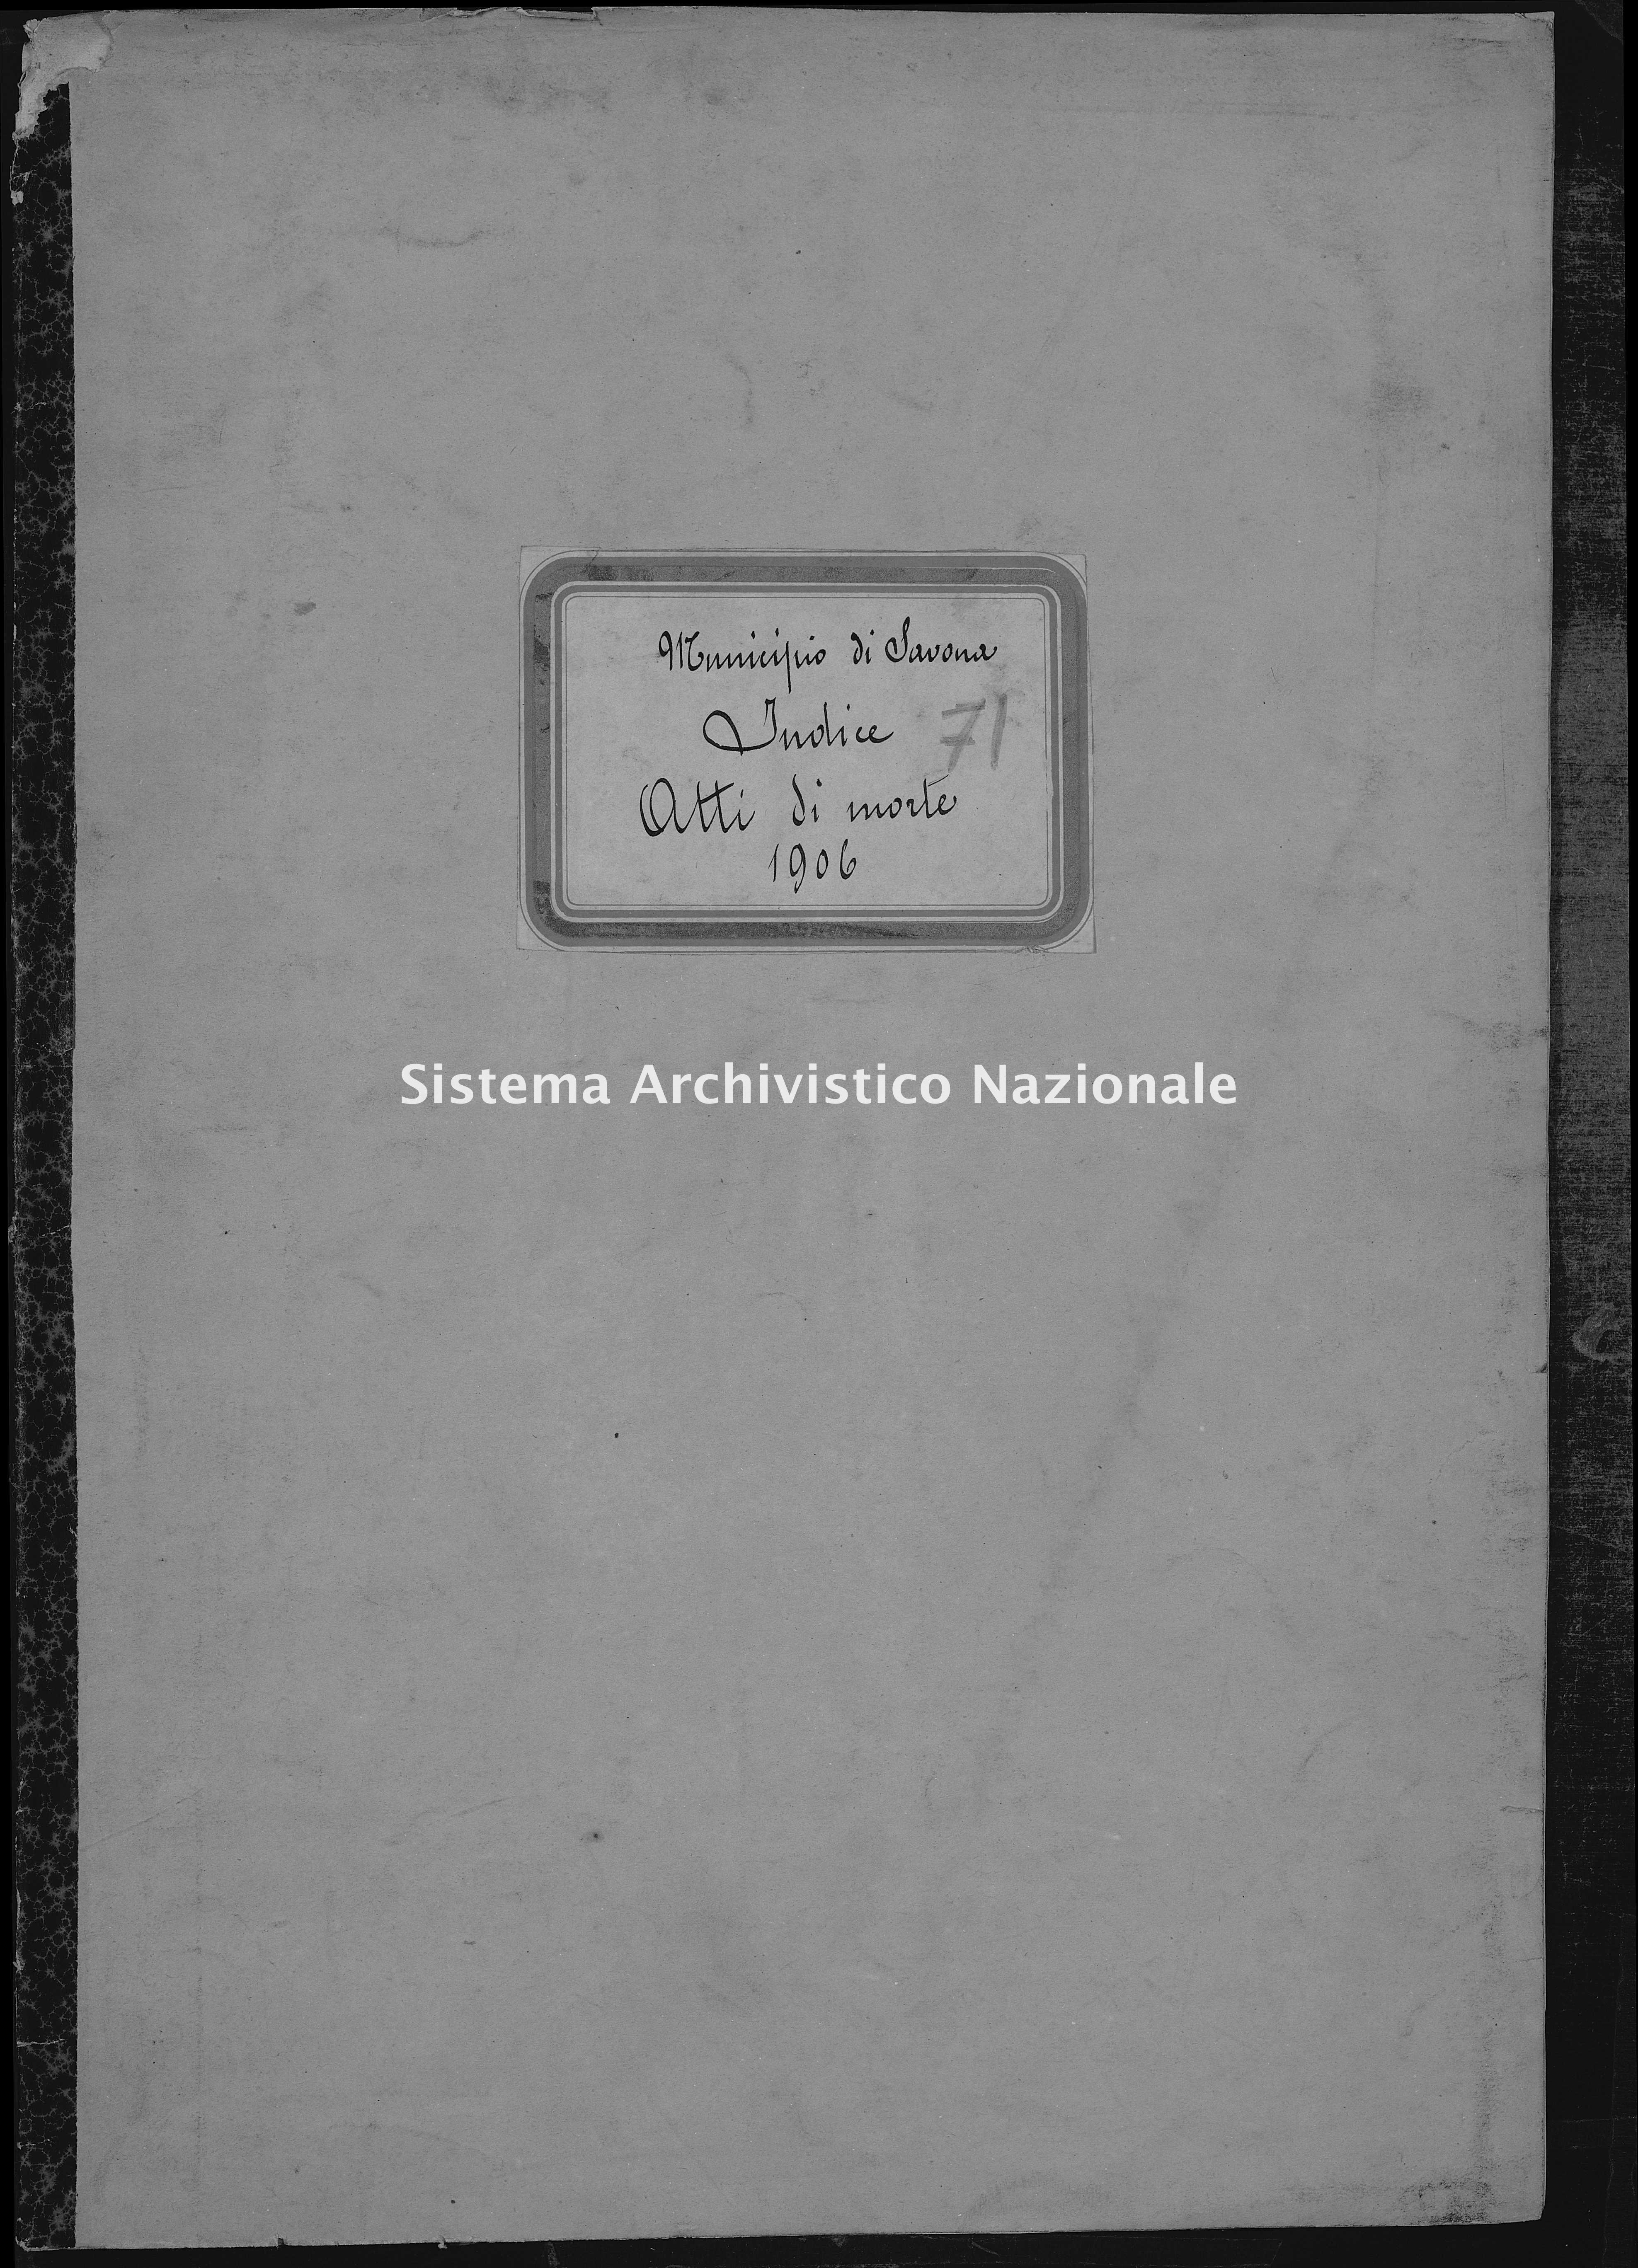 Archivio di stato di Savona - Stato civile - Savona - Morti, indice - 1906 - 71 -